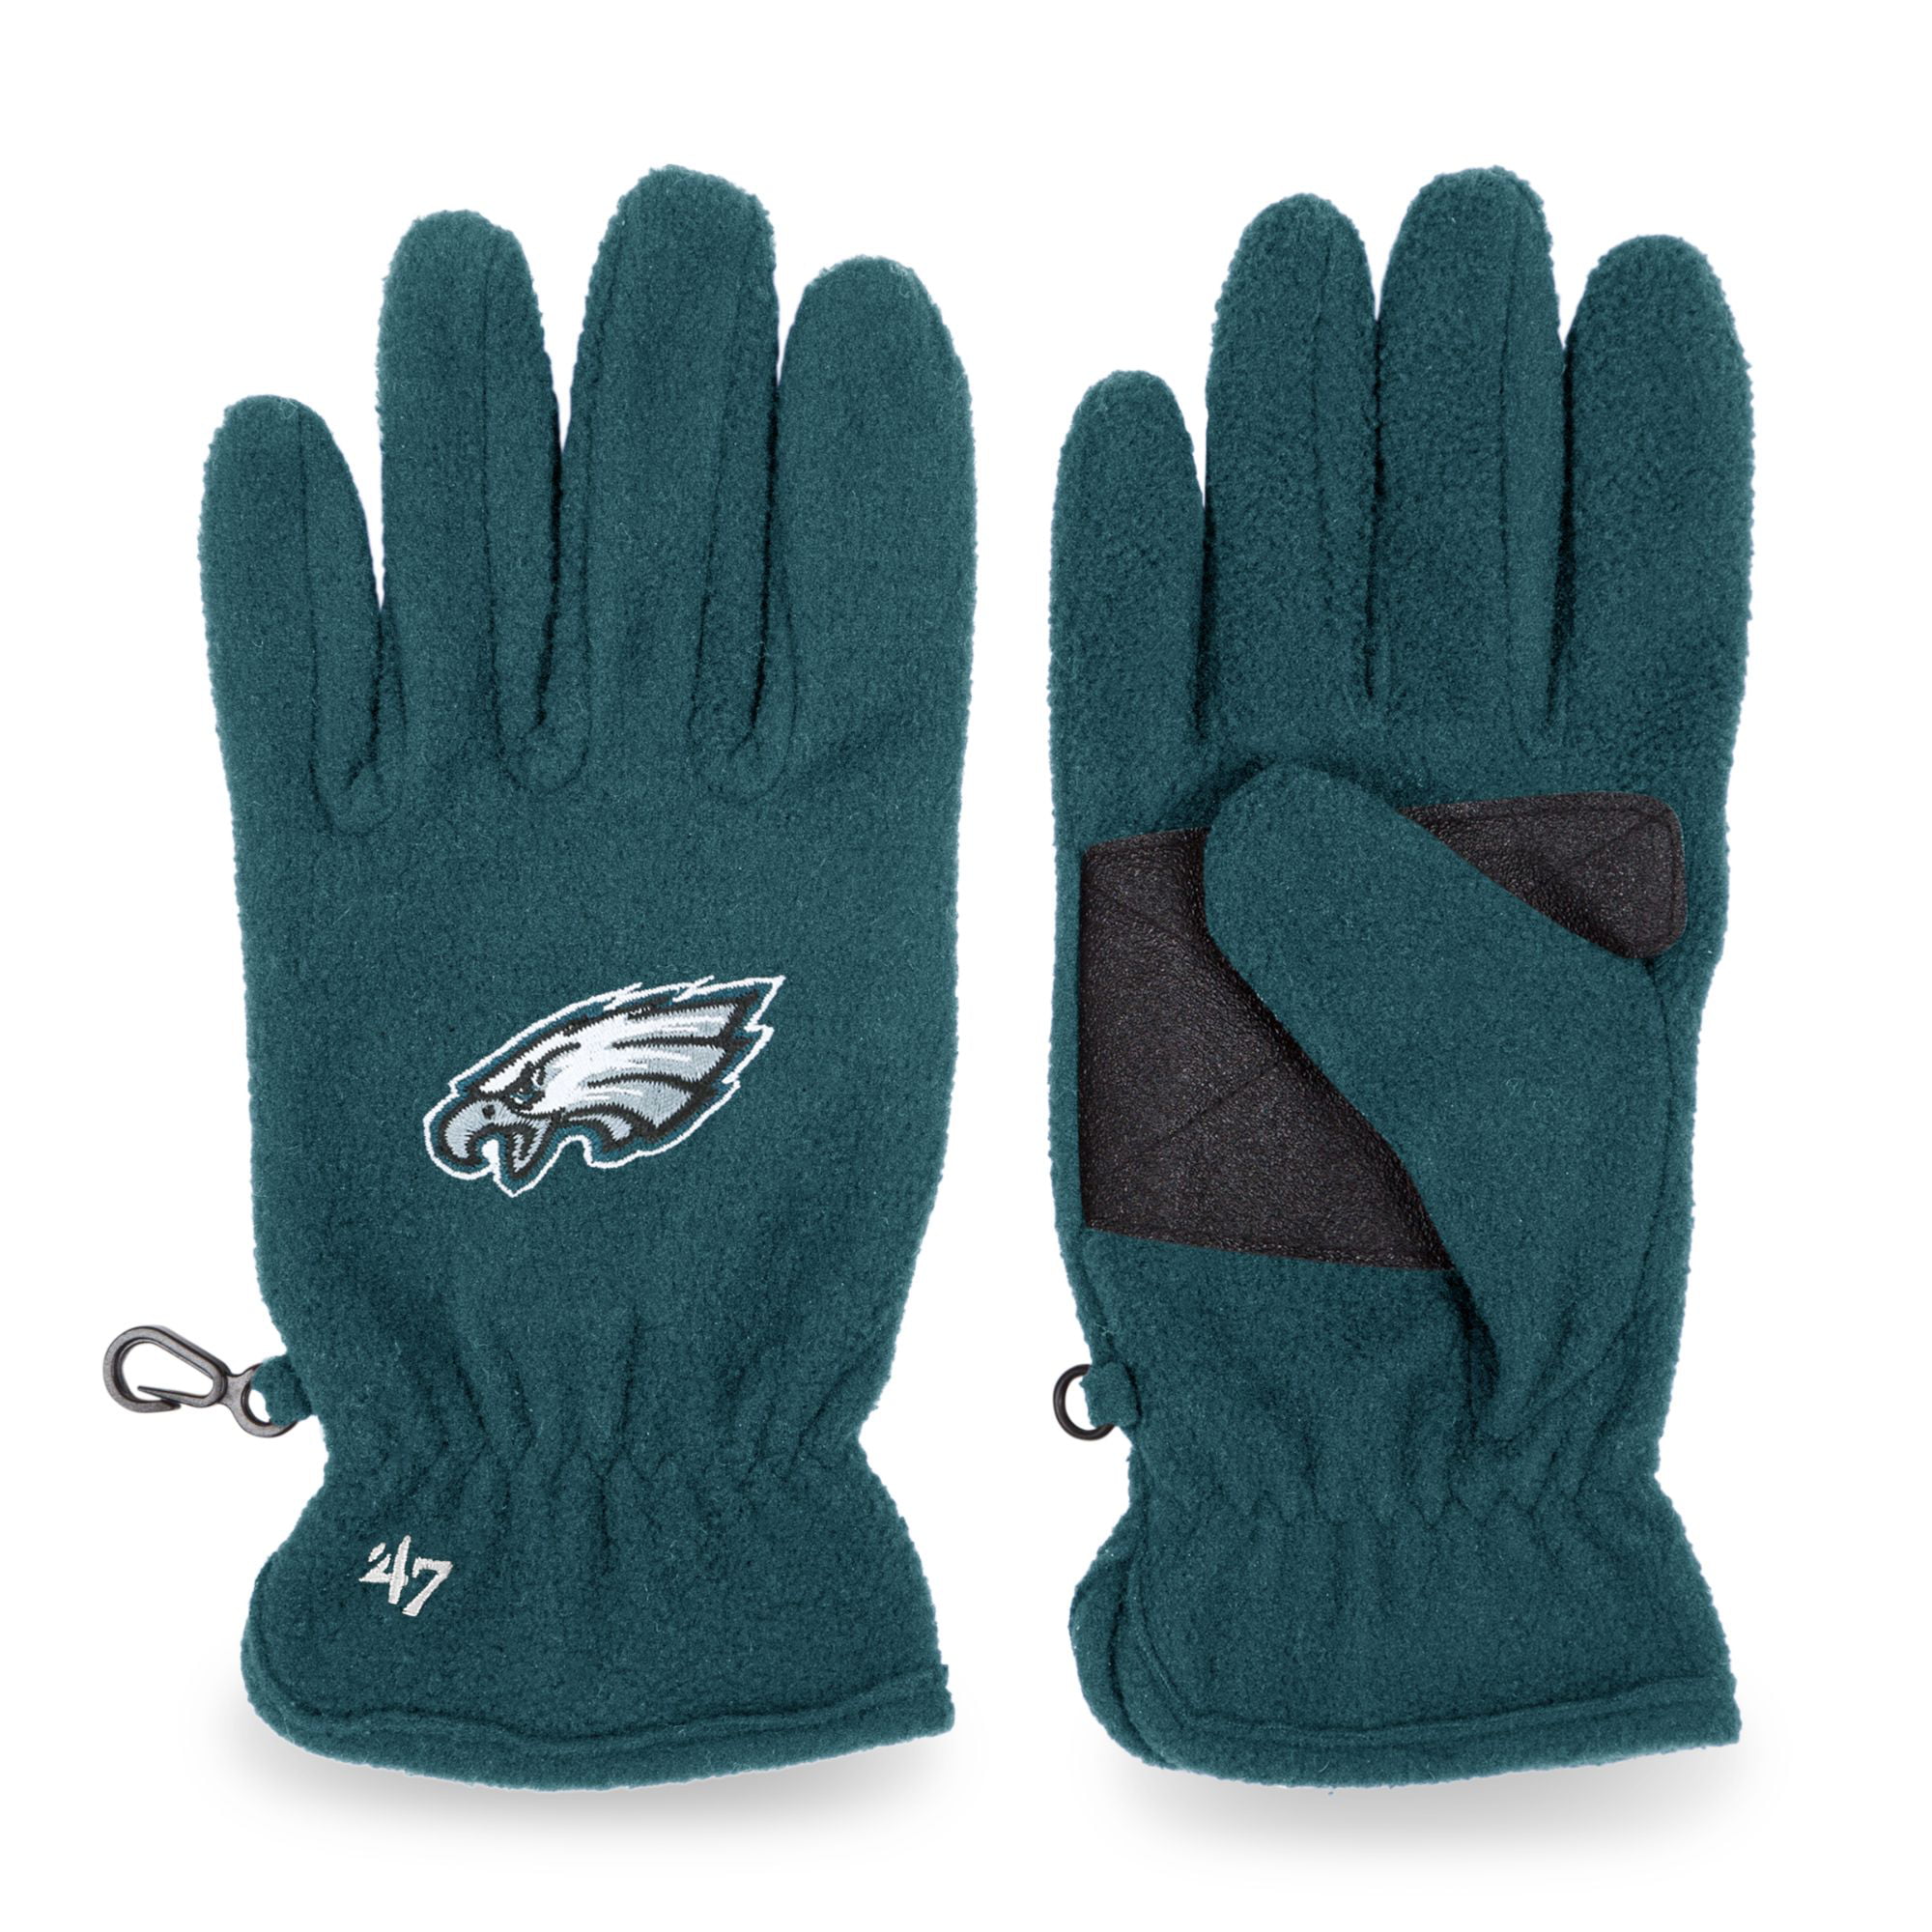 Eagles gloves